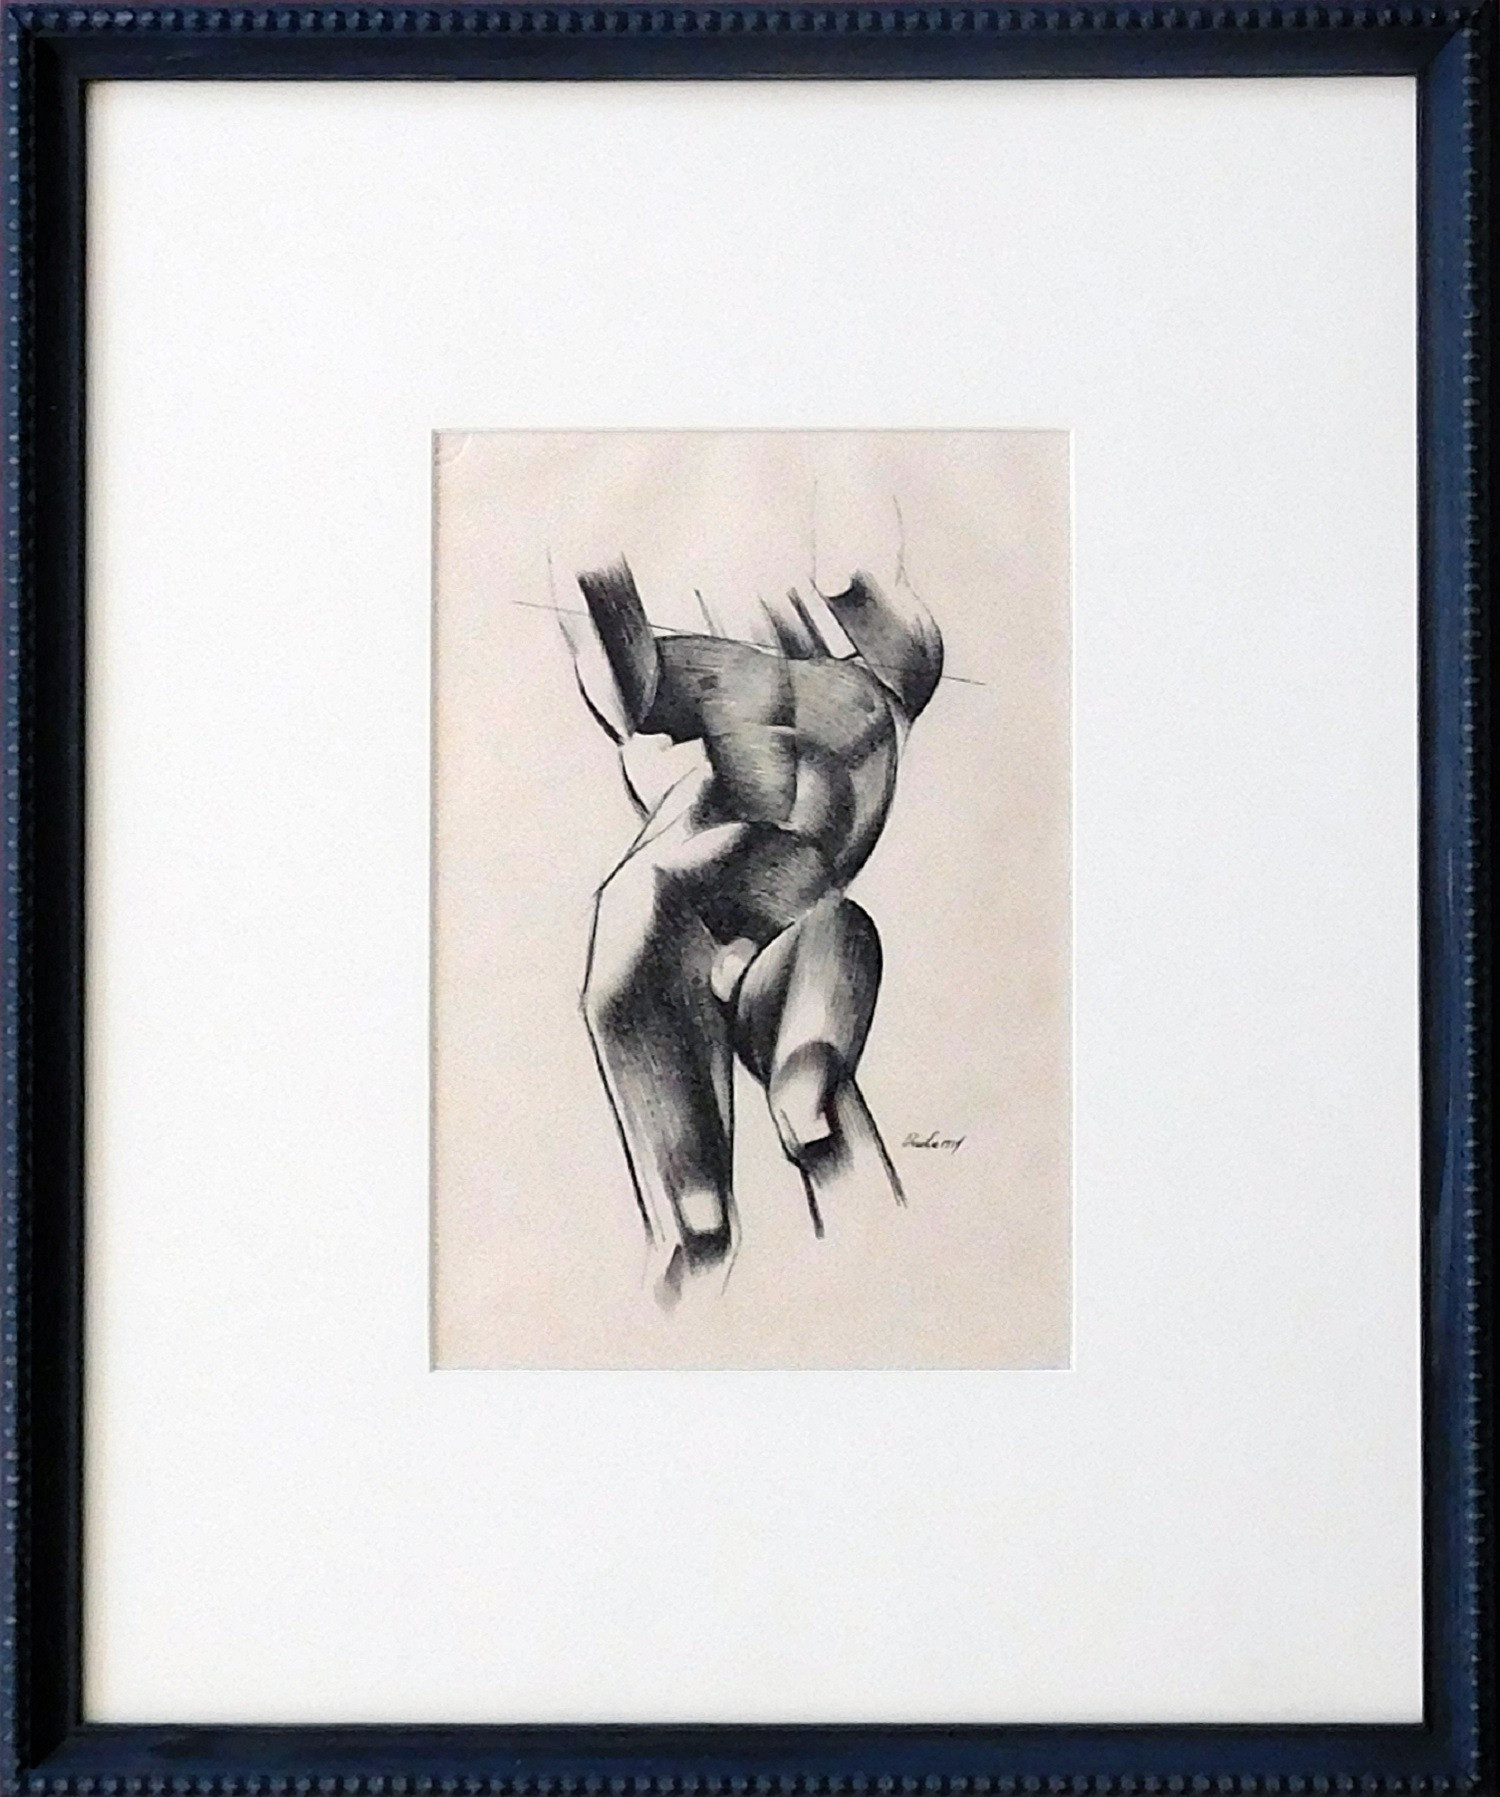 Framed 21" X 17" Brush & Ink on Paper 1934